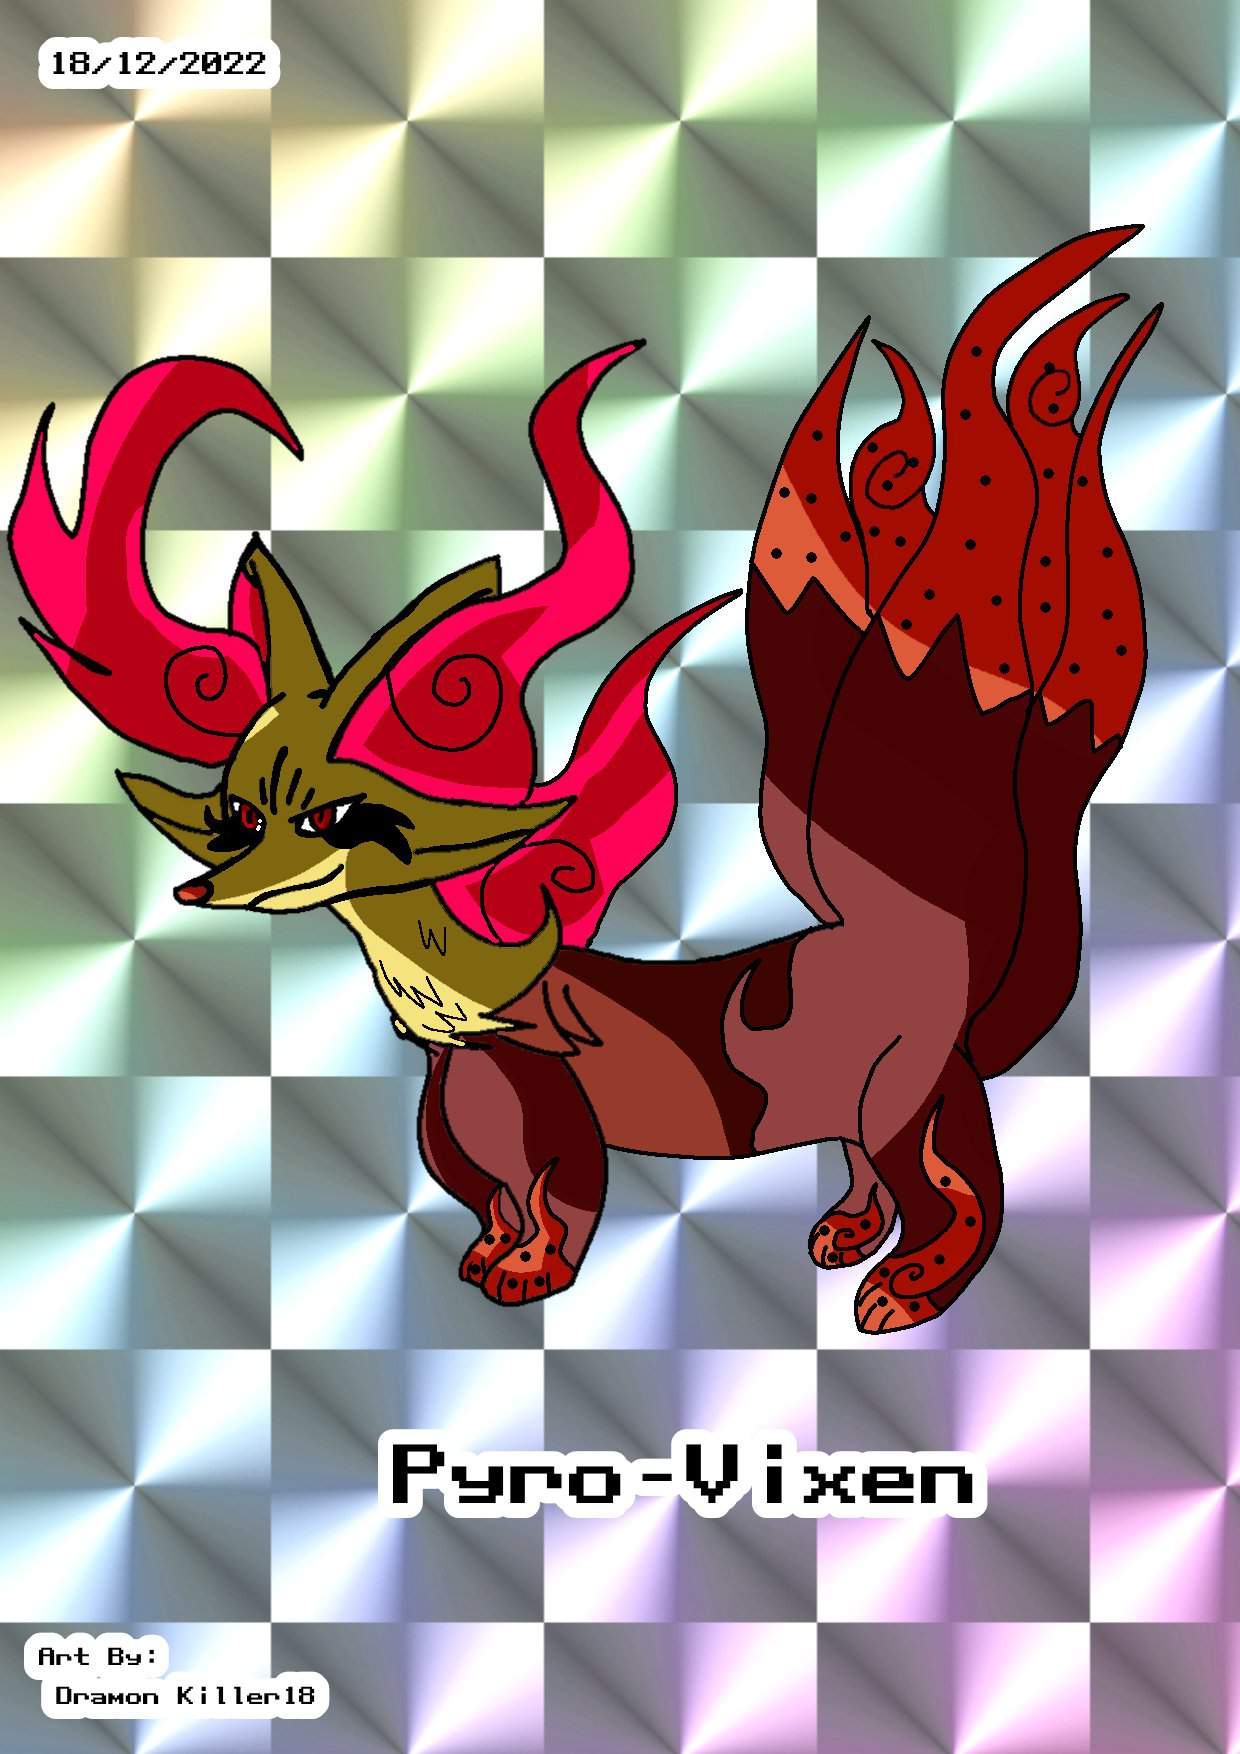 pyro-vixen-delphox-past-paradox-form-pok-mon-amino